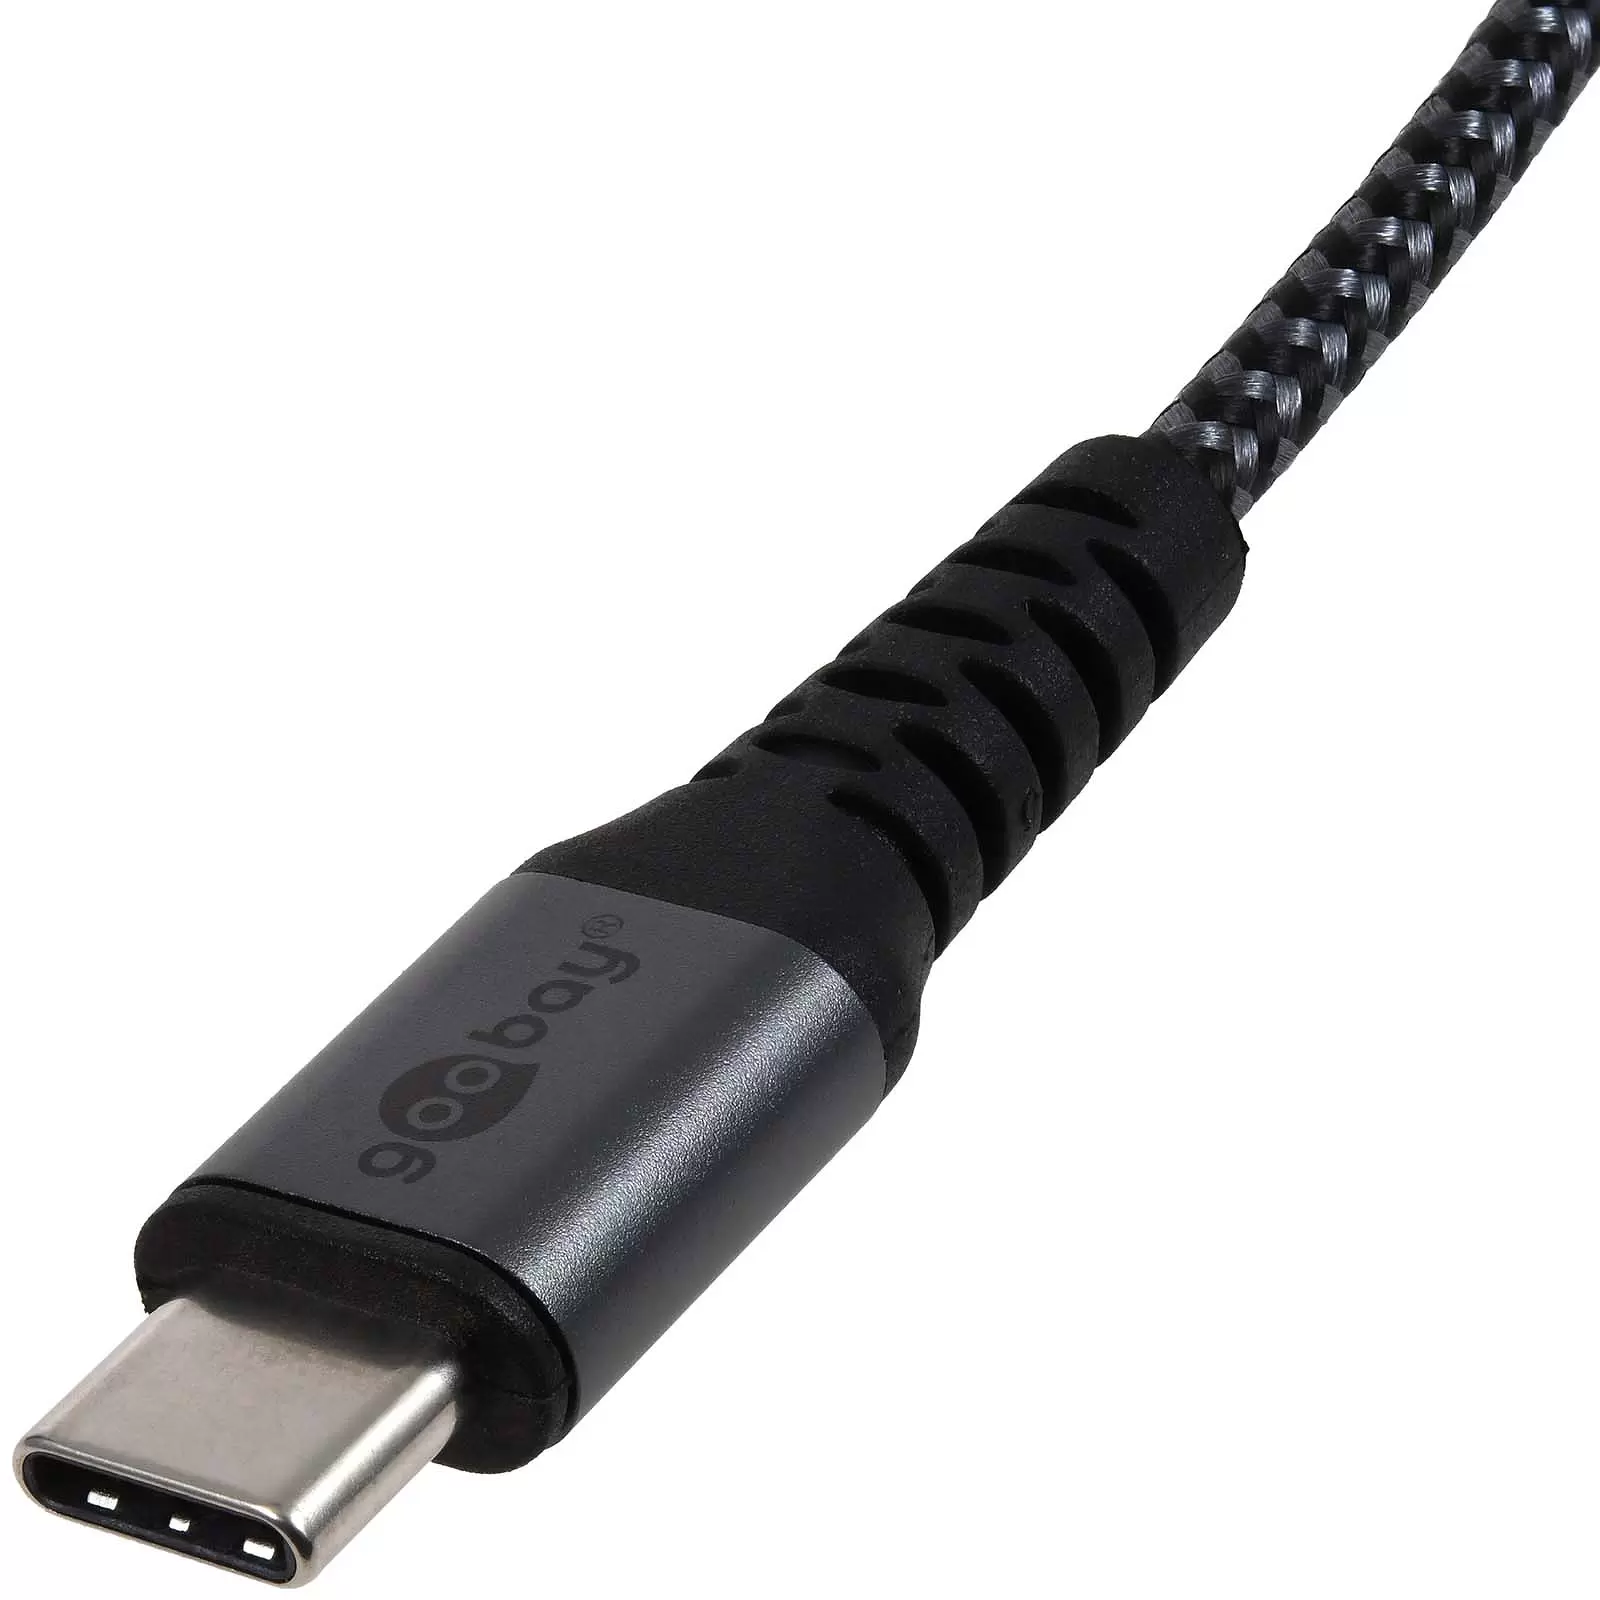 USB-C-auf-USB-A Textilkabel mit Metallsteckern spacegrau/silber, 1 m, 49296